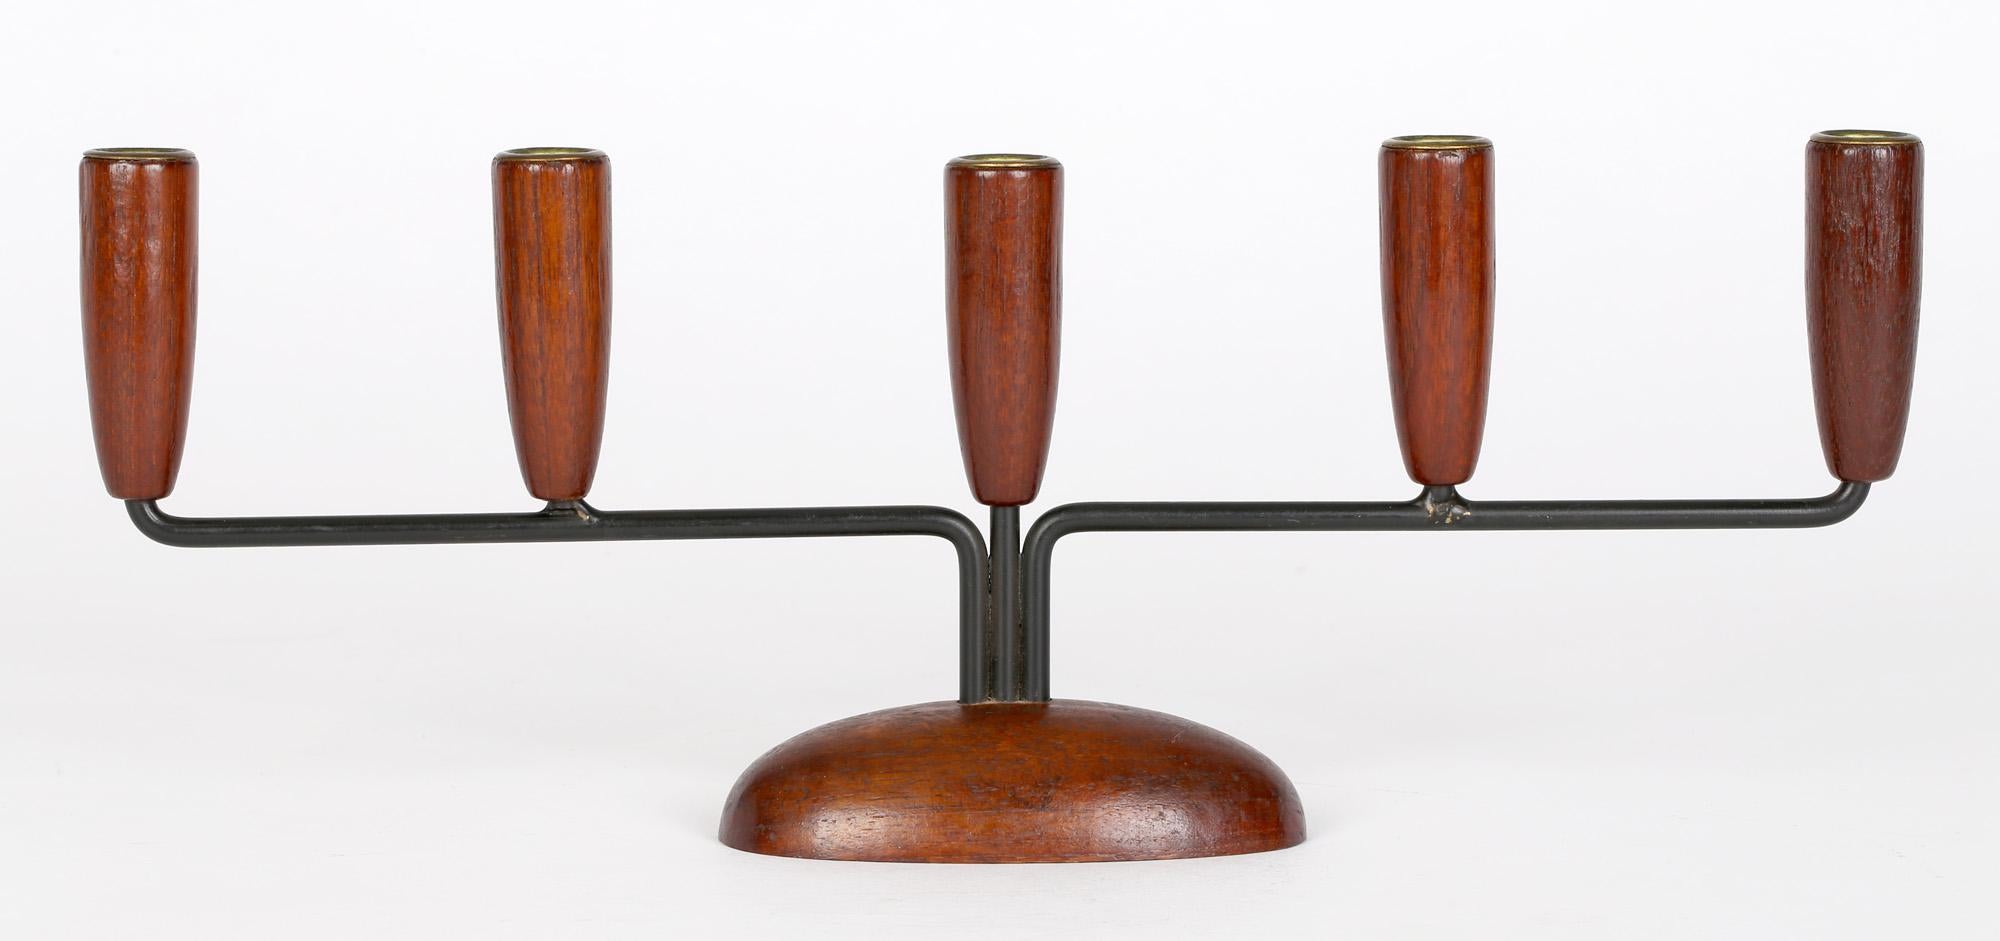 Un simple mais étonnant bougeoir danois en métal et bois du milieu du siècle dernier, datant d'environ 1960. Les chandeliers sont montés sur une base ovale sculptée et surélevée, avec trois bras métalliques partant du centre. Le bras central